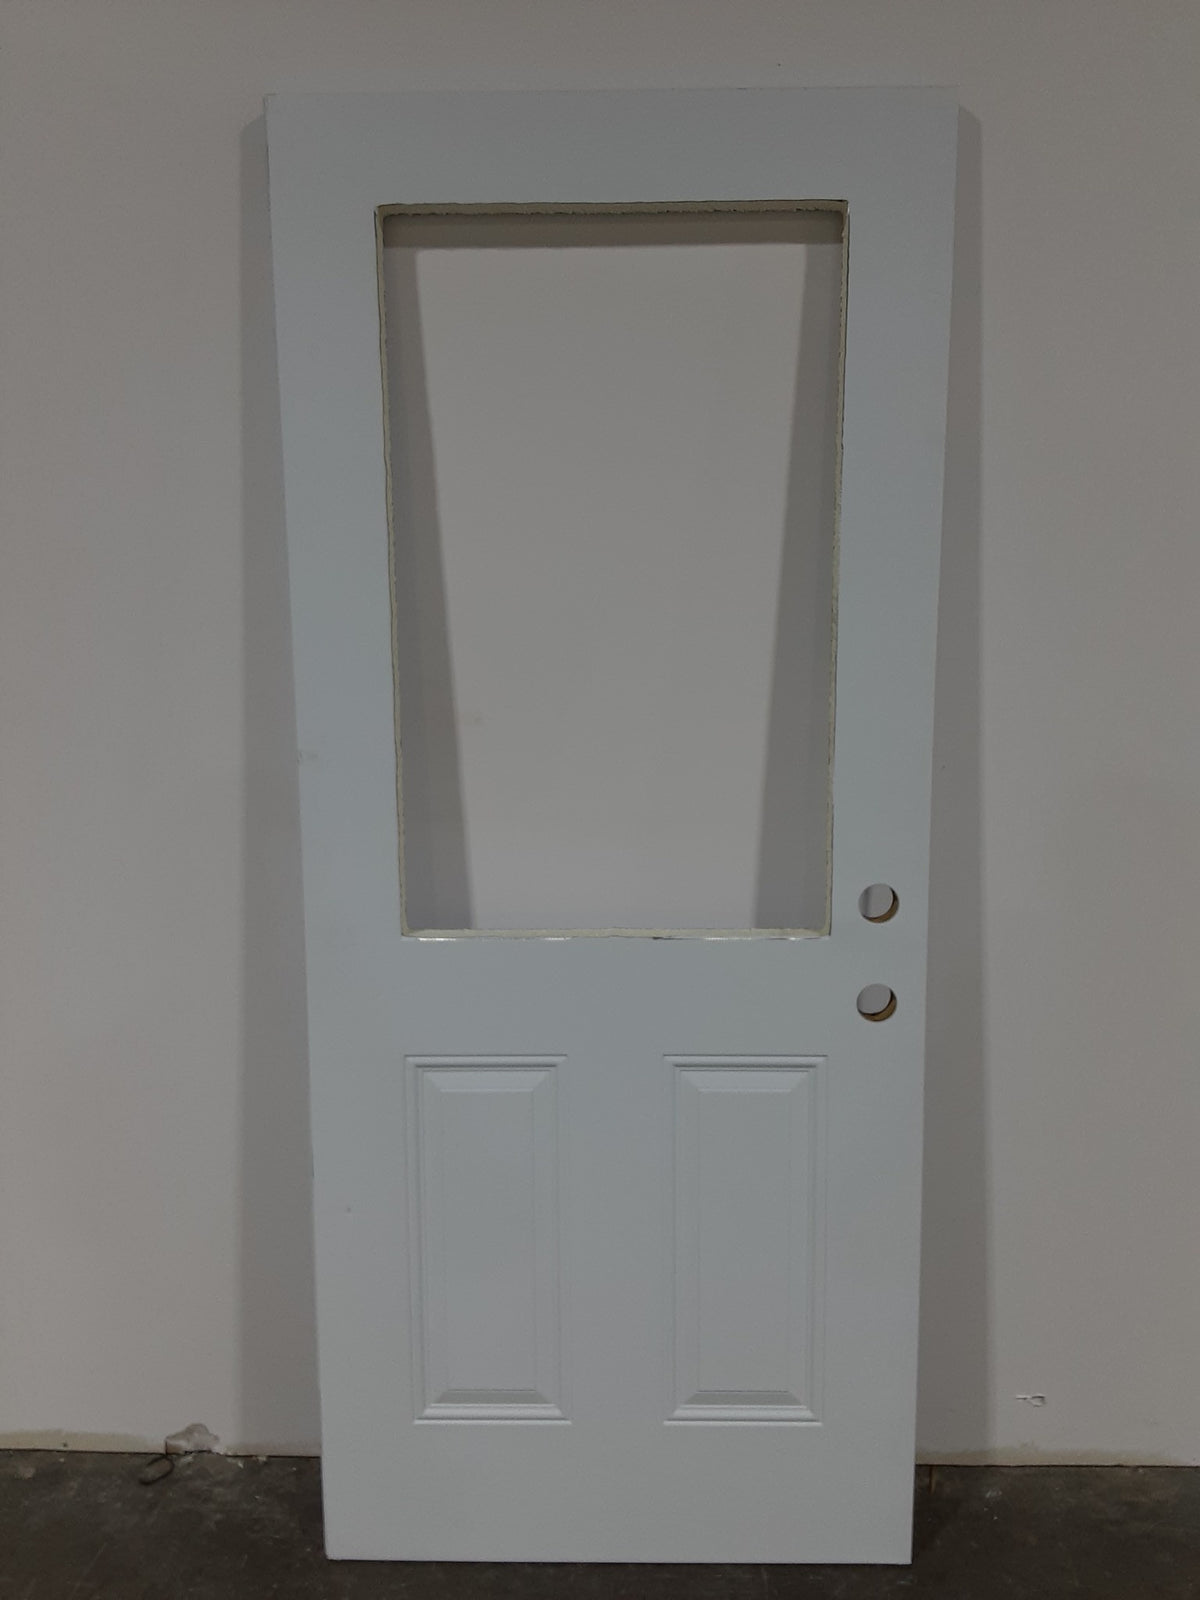 Aluminum Clad Insulated Door 33-1/2" x 79"